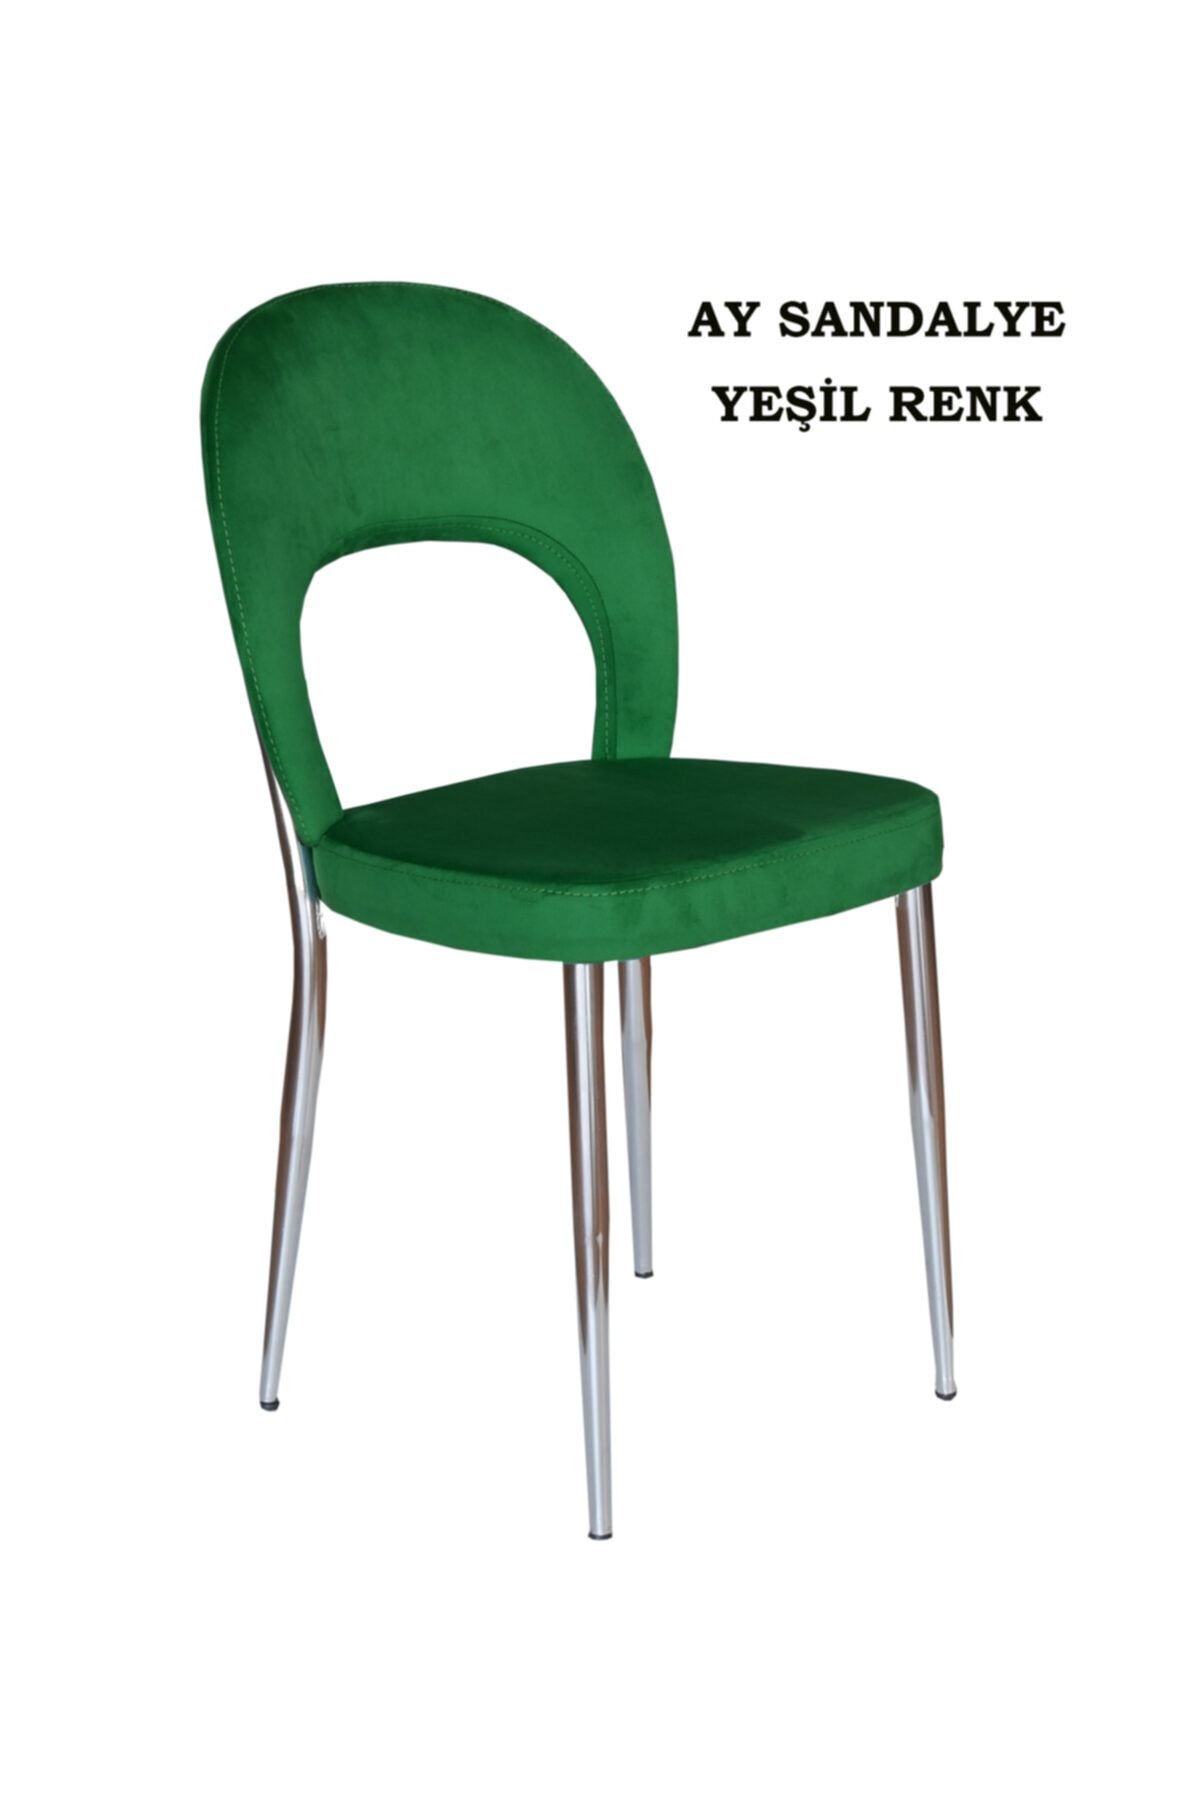 Ankhira Ay Sandalye, Mutfak Sandalyesi, Silinebilir Yeşil Renk Kumaş, Krom Ayaklı